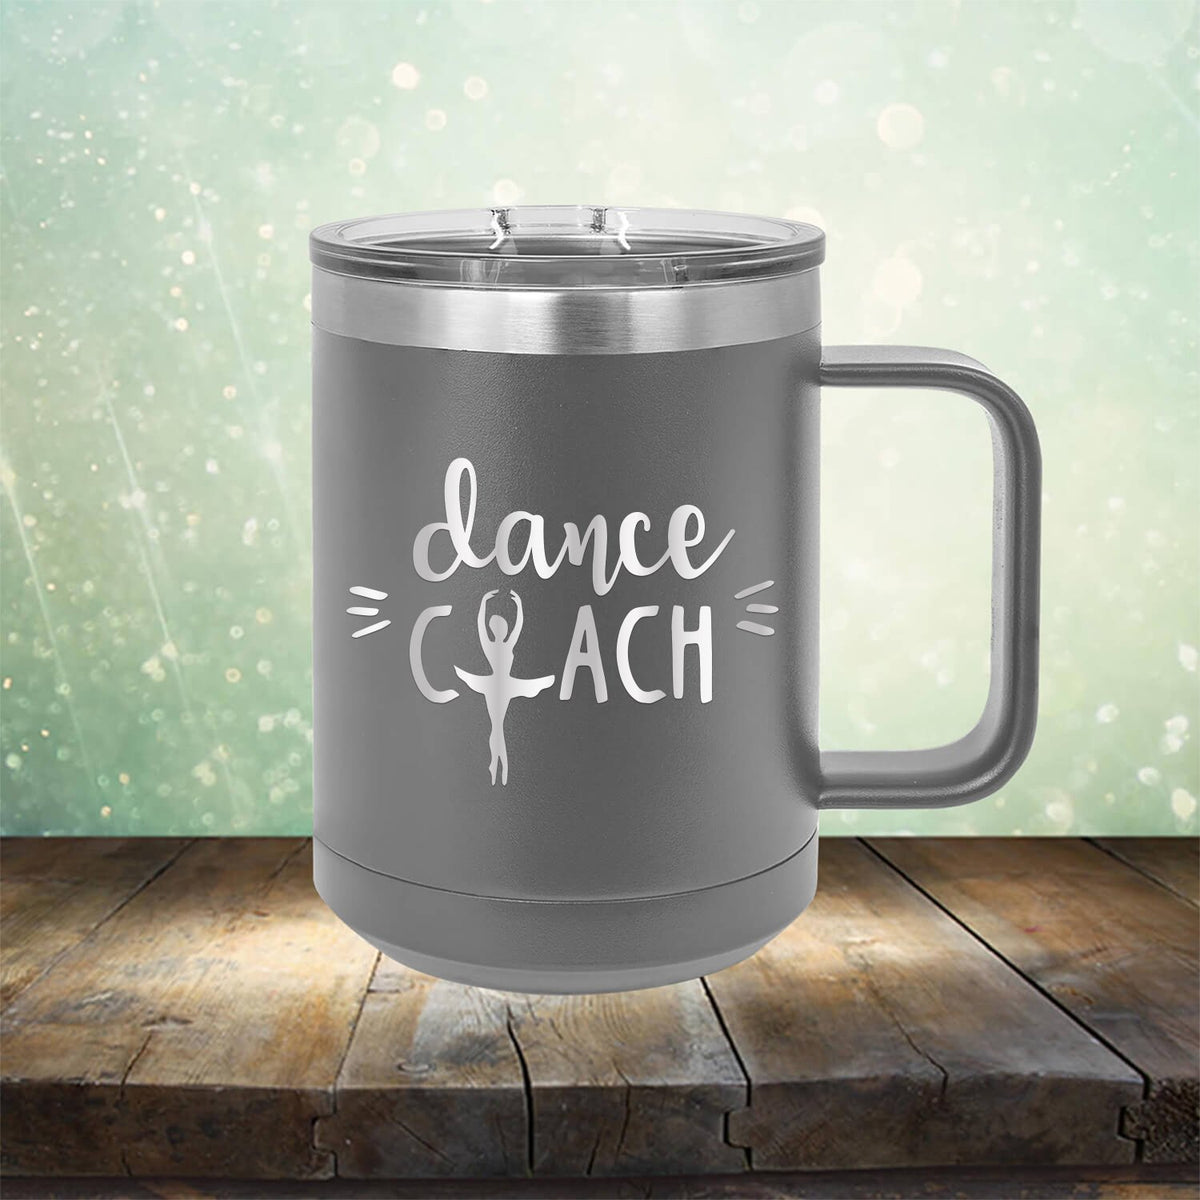 Dance Coach - Laser Etched Tumbler Mug